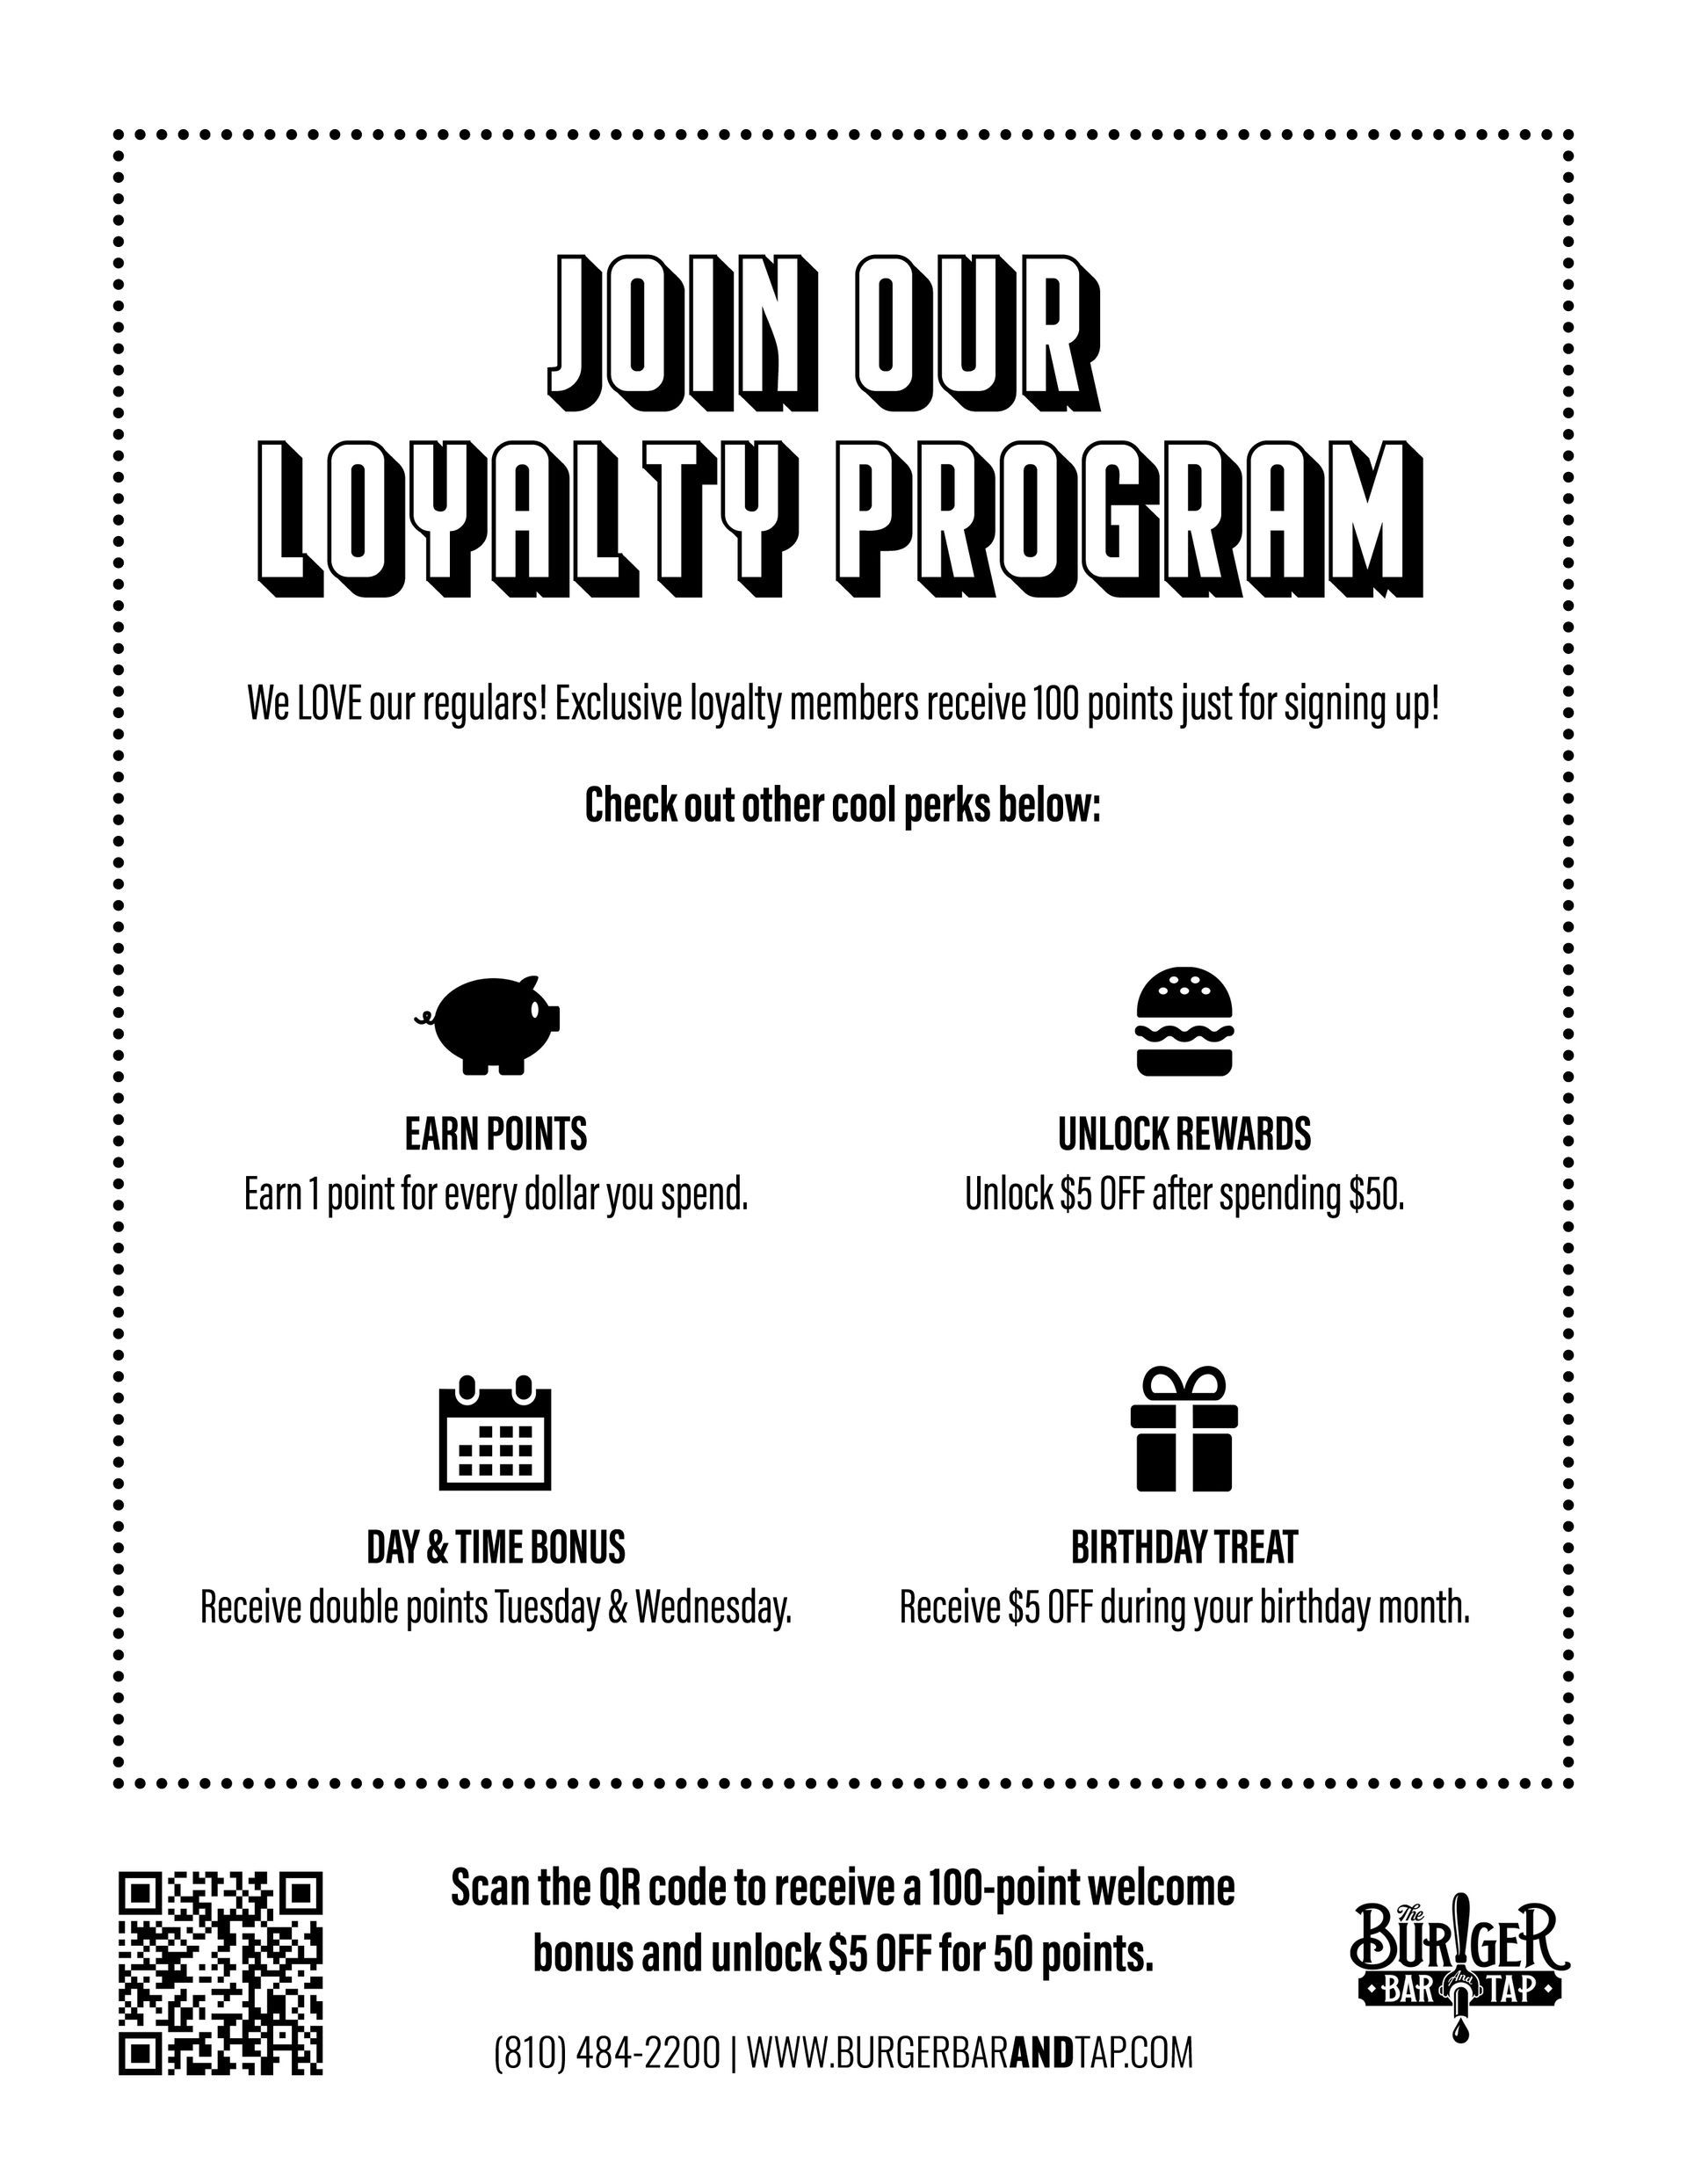 BB&T Loyalty Program